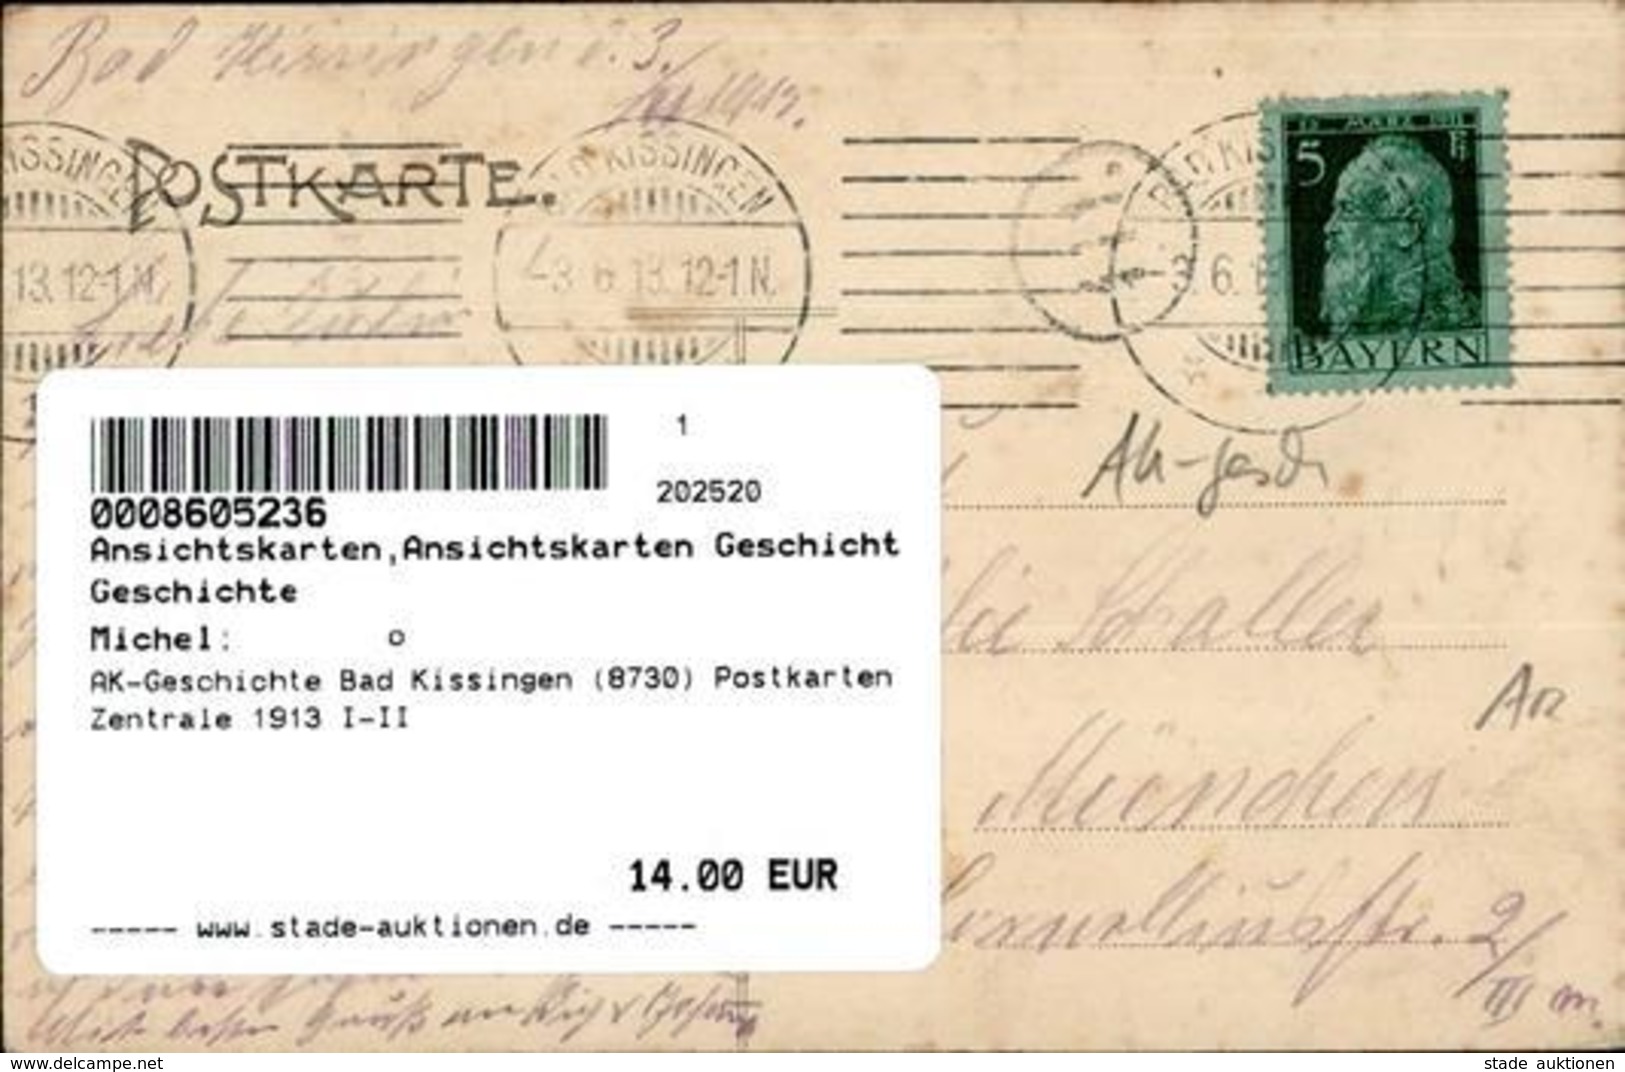 AK-Geschichte Bad Kissingen (8730) Postkarten Zentrale 1913 I-II - History